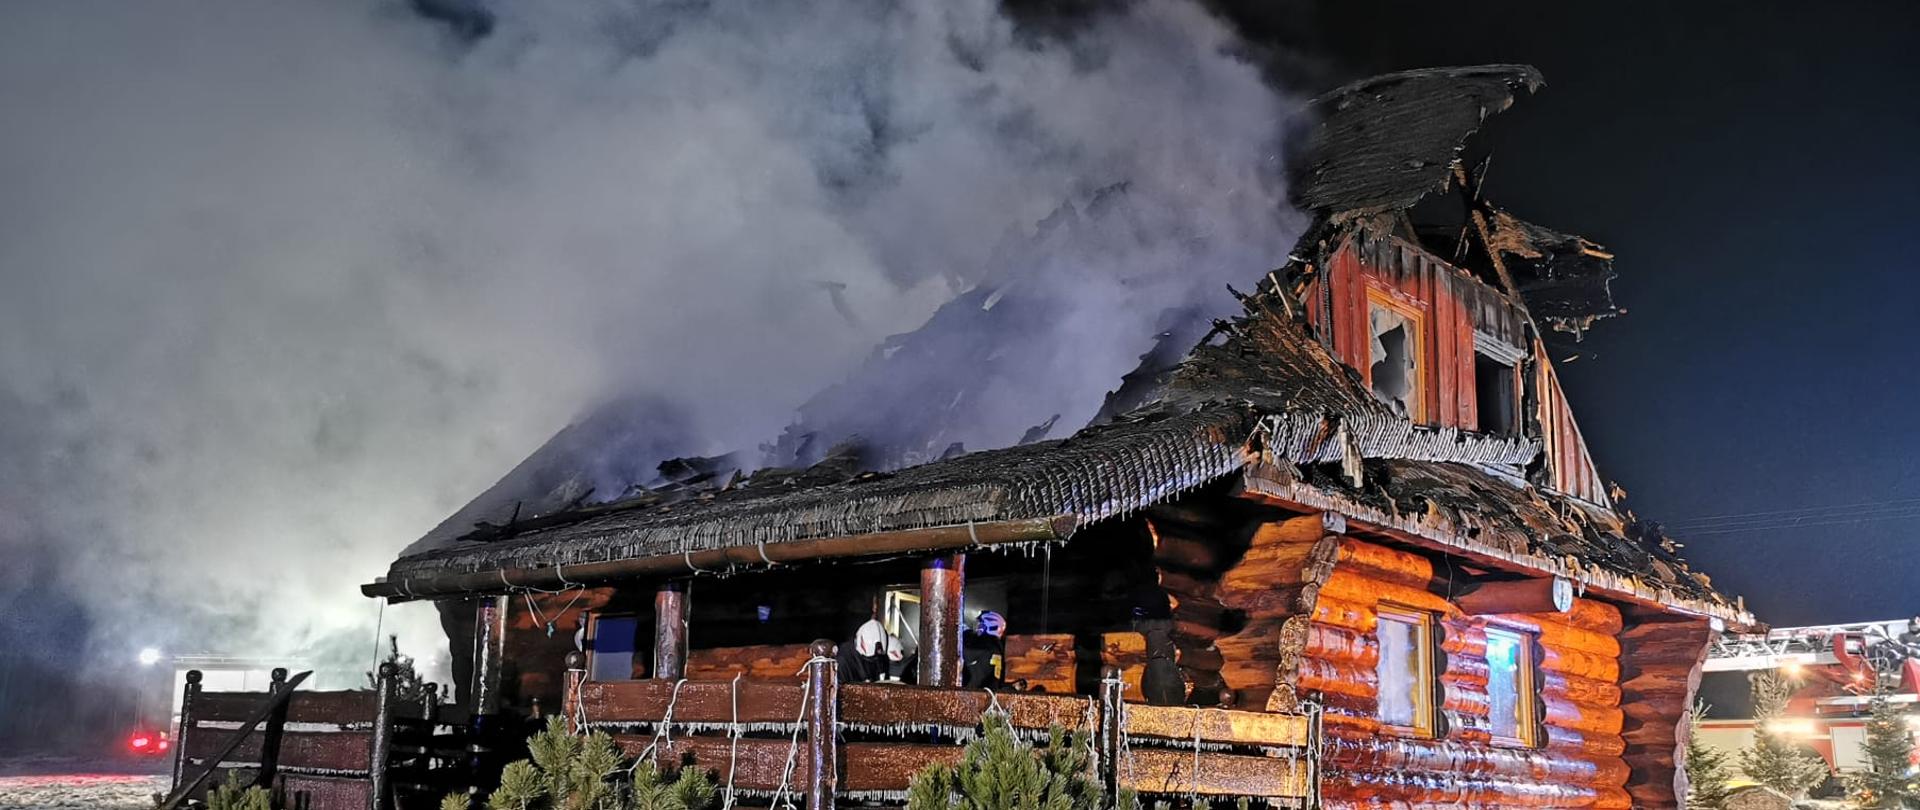 Pora nocna. Widok na zniszczony wskutek pożaru drewniany budynek jednorodzinny. Ze spalonego dachu wydobywają się kłęby dymu.